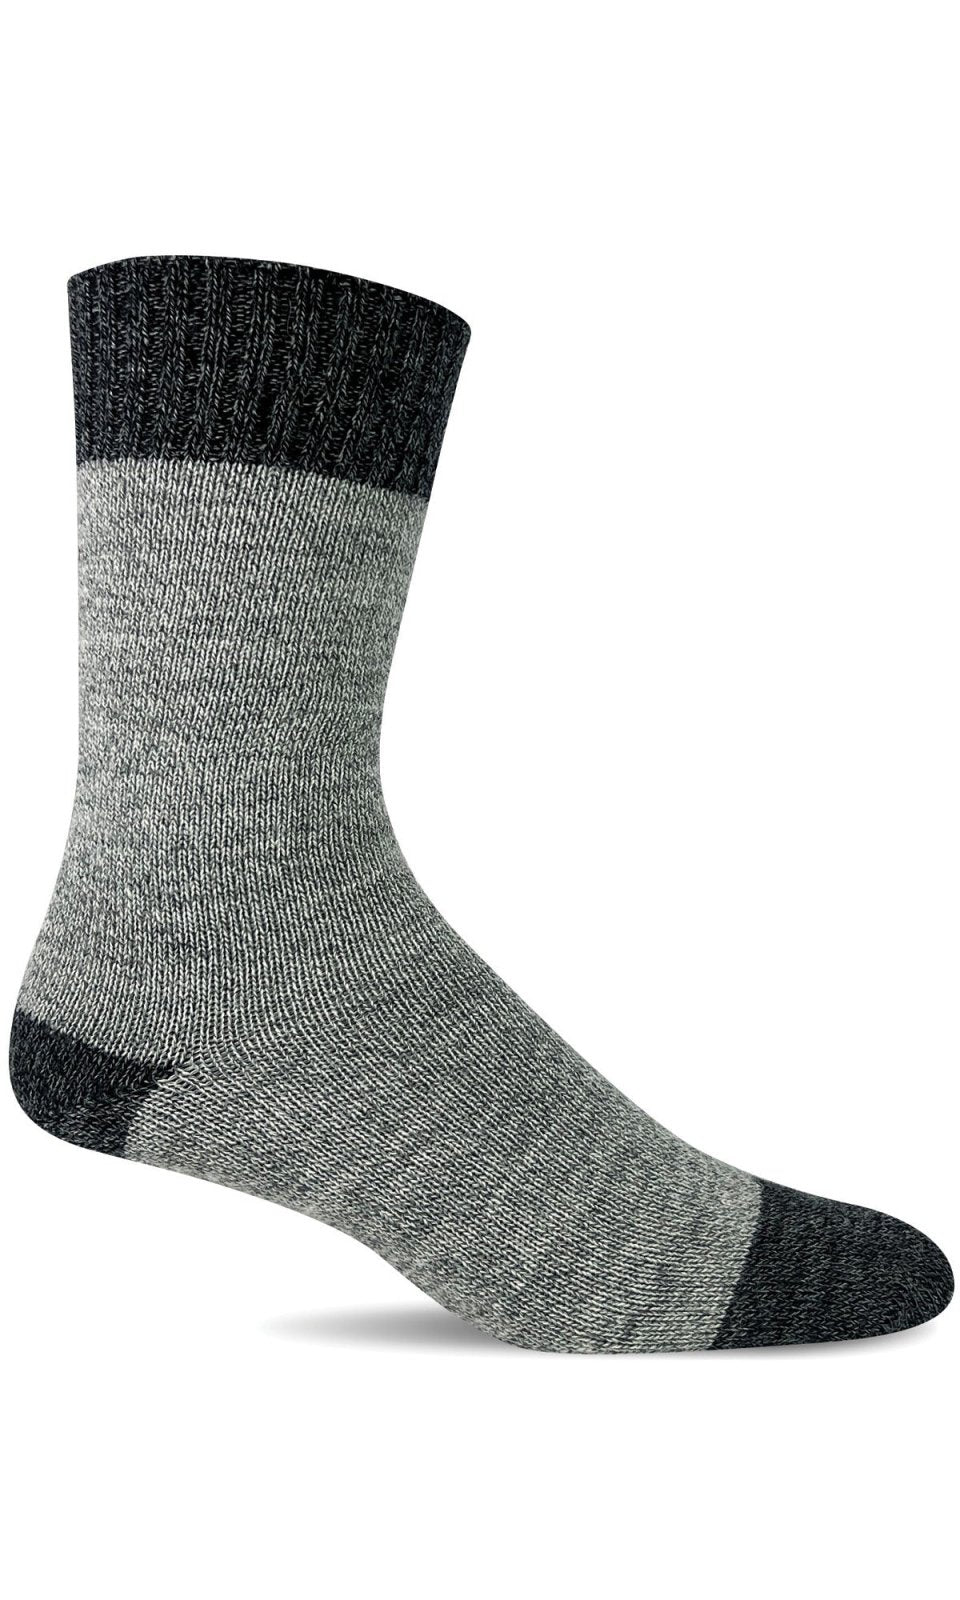 Men's Marl Mixer | Essential Comfort Socks - Merino Wool Essential Comfort - Sockwell